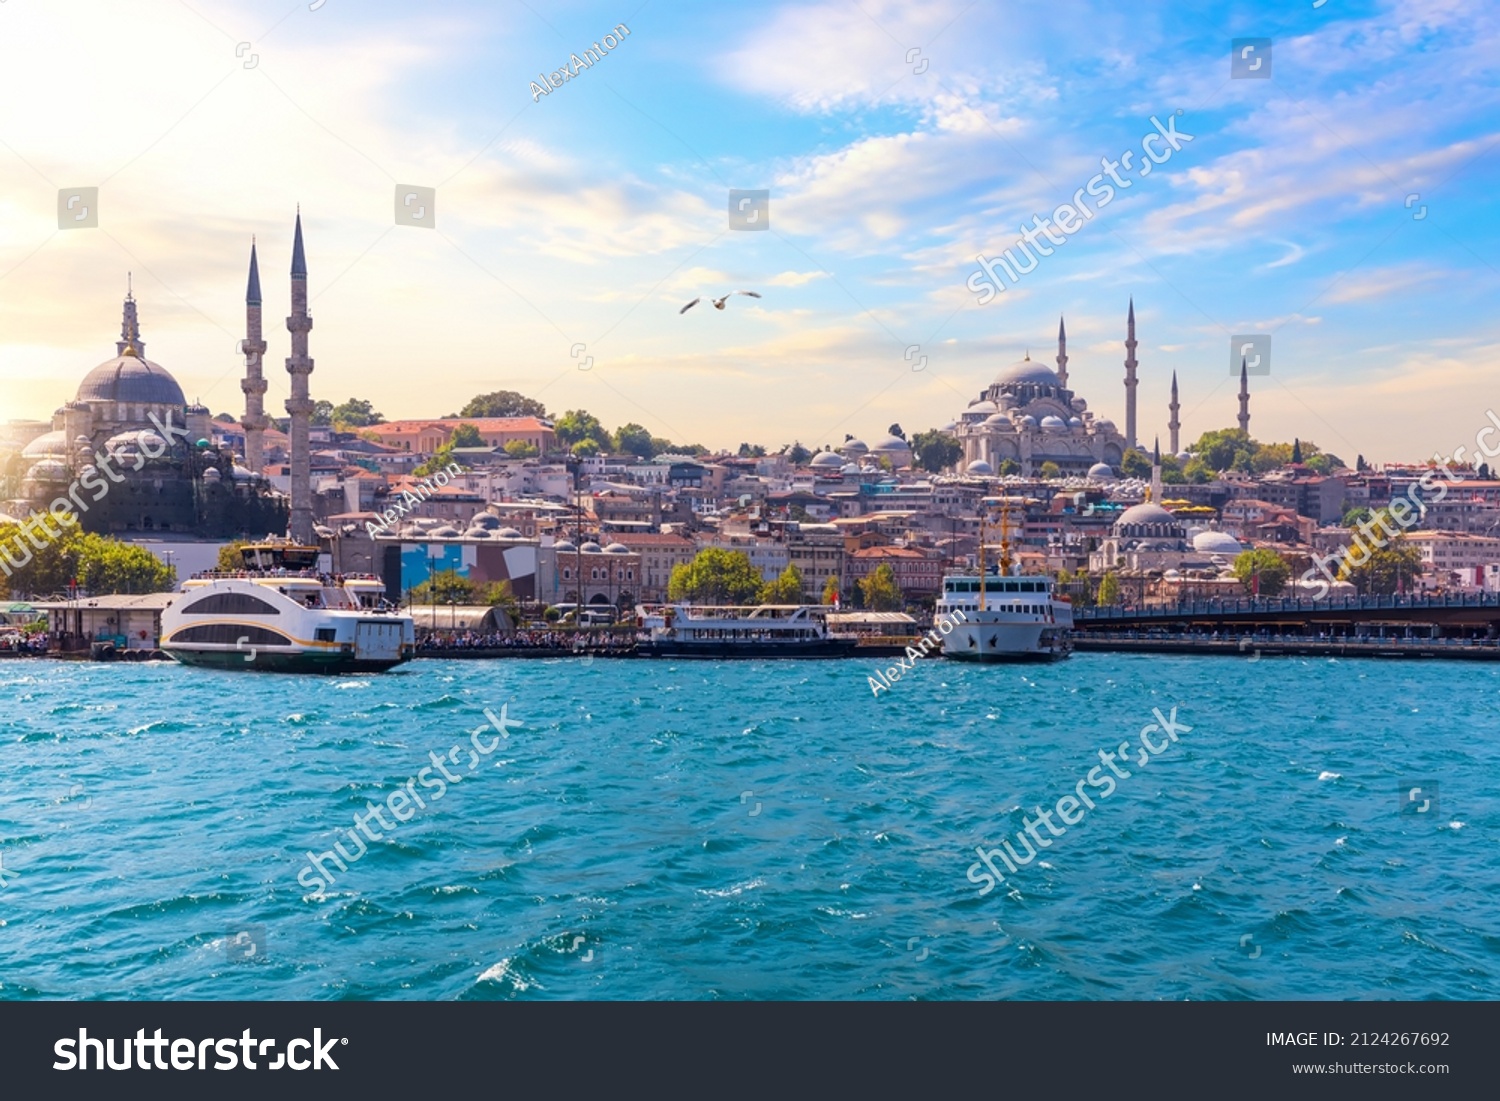 Famous Rustem Pasha Mosque and Suleymaniye Mosque, Bosphorus, Istanbul #2124267692